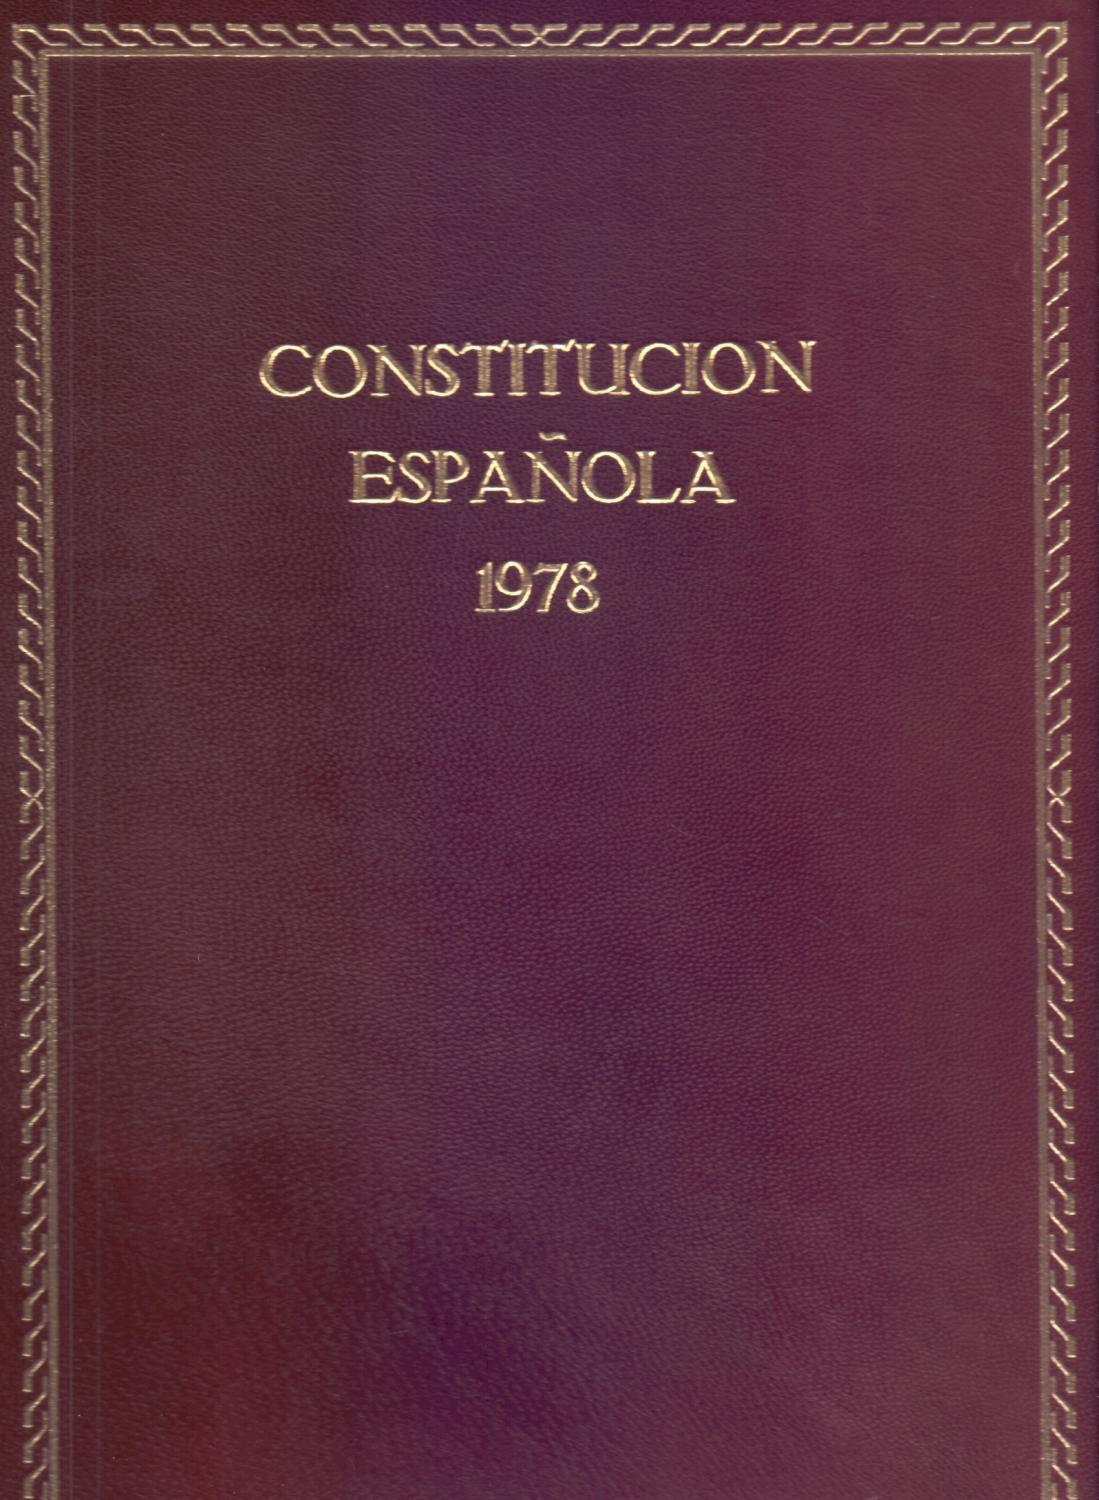 Constitución española de 1978 (Leyes #16) (Paperback)